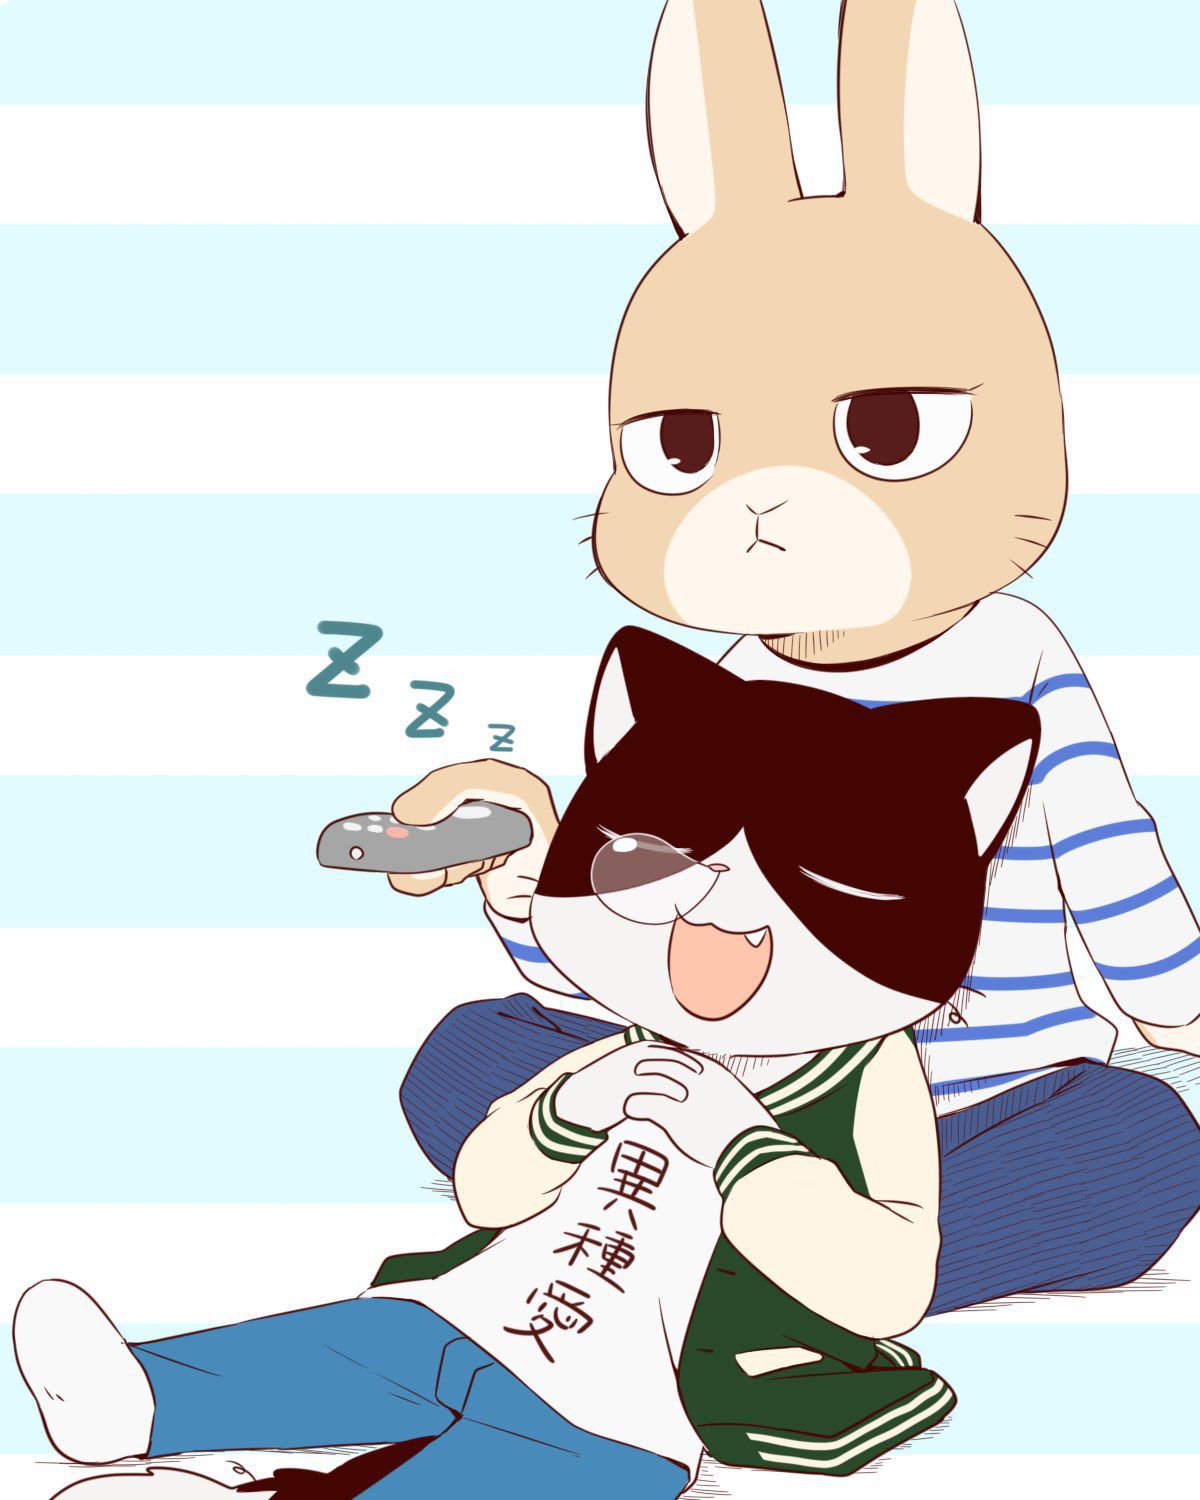 [twitter] kaicuirabbit (56480341) 67